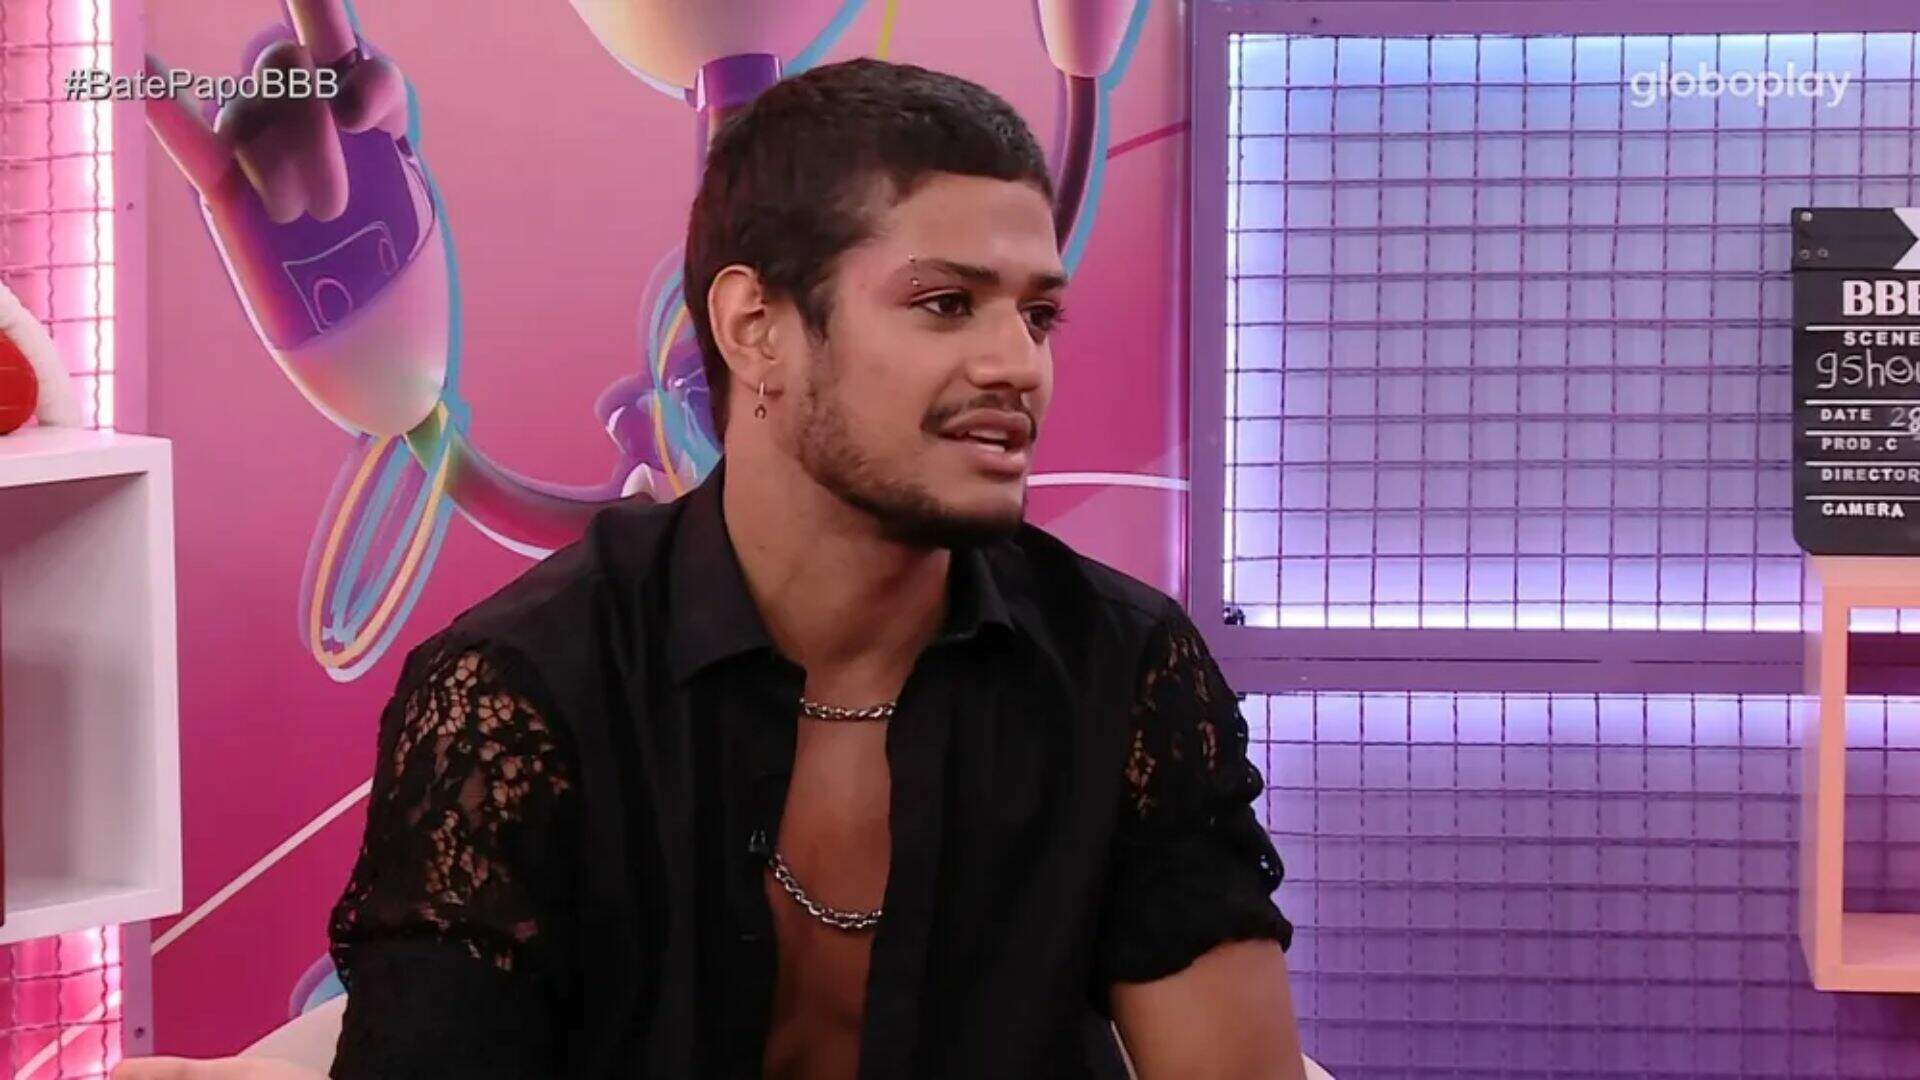 BBB 23: Gabriel Santana surpreende com explicação para ter se assumido bissexual no programa - Metropolitana FM